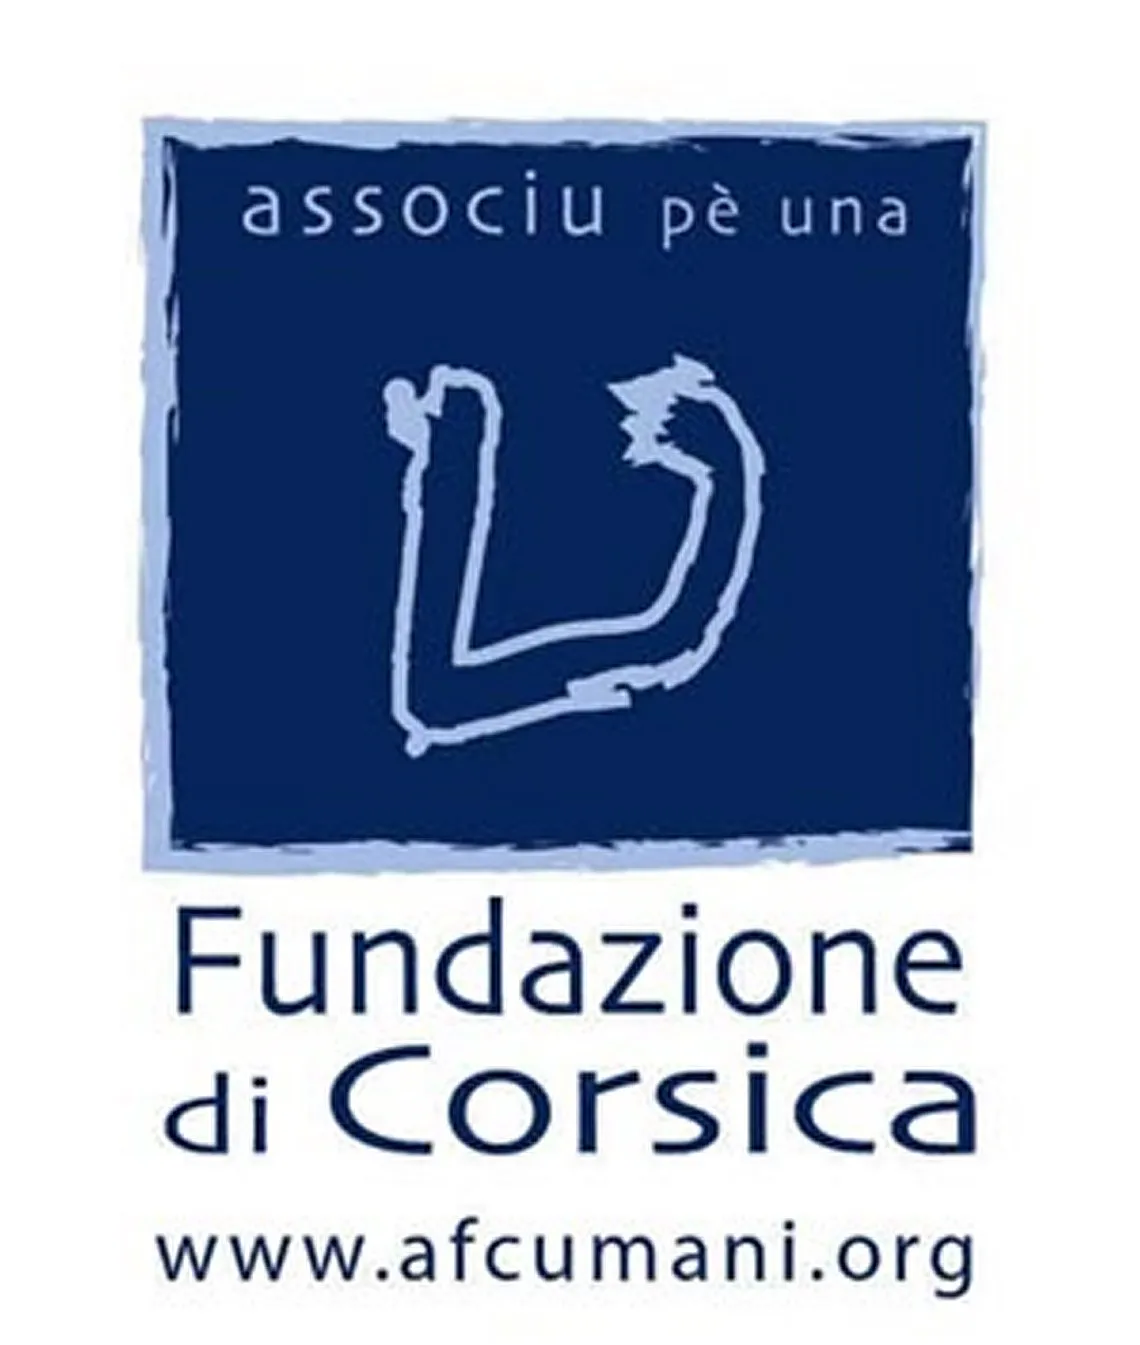 FOUNDATION CORSICA - FUNDAZIONE DI CORSICA UMANI